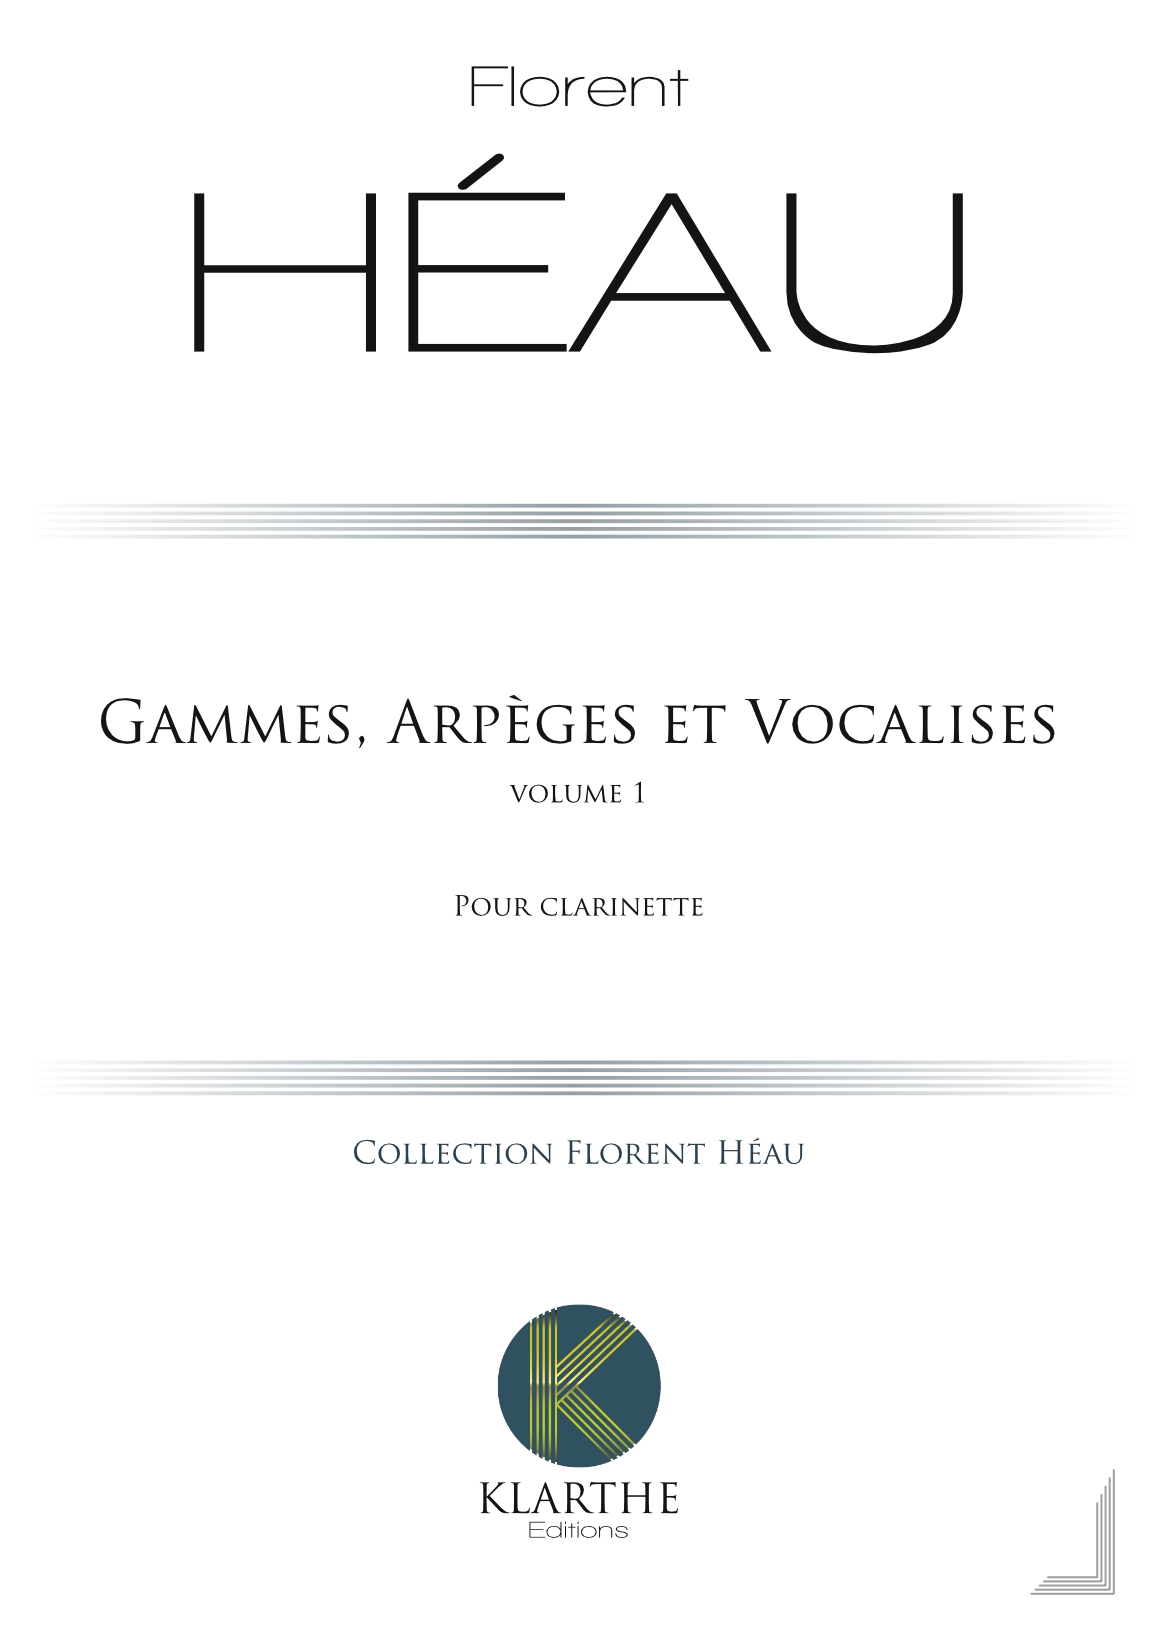 Gammes, Arp�ges et Vocalises Vol 1 (HEAU FLORENT)